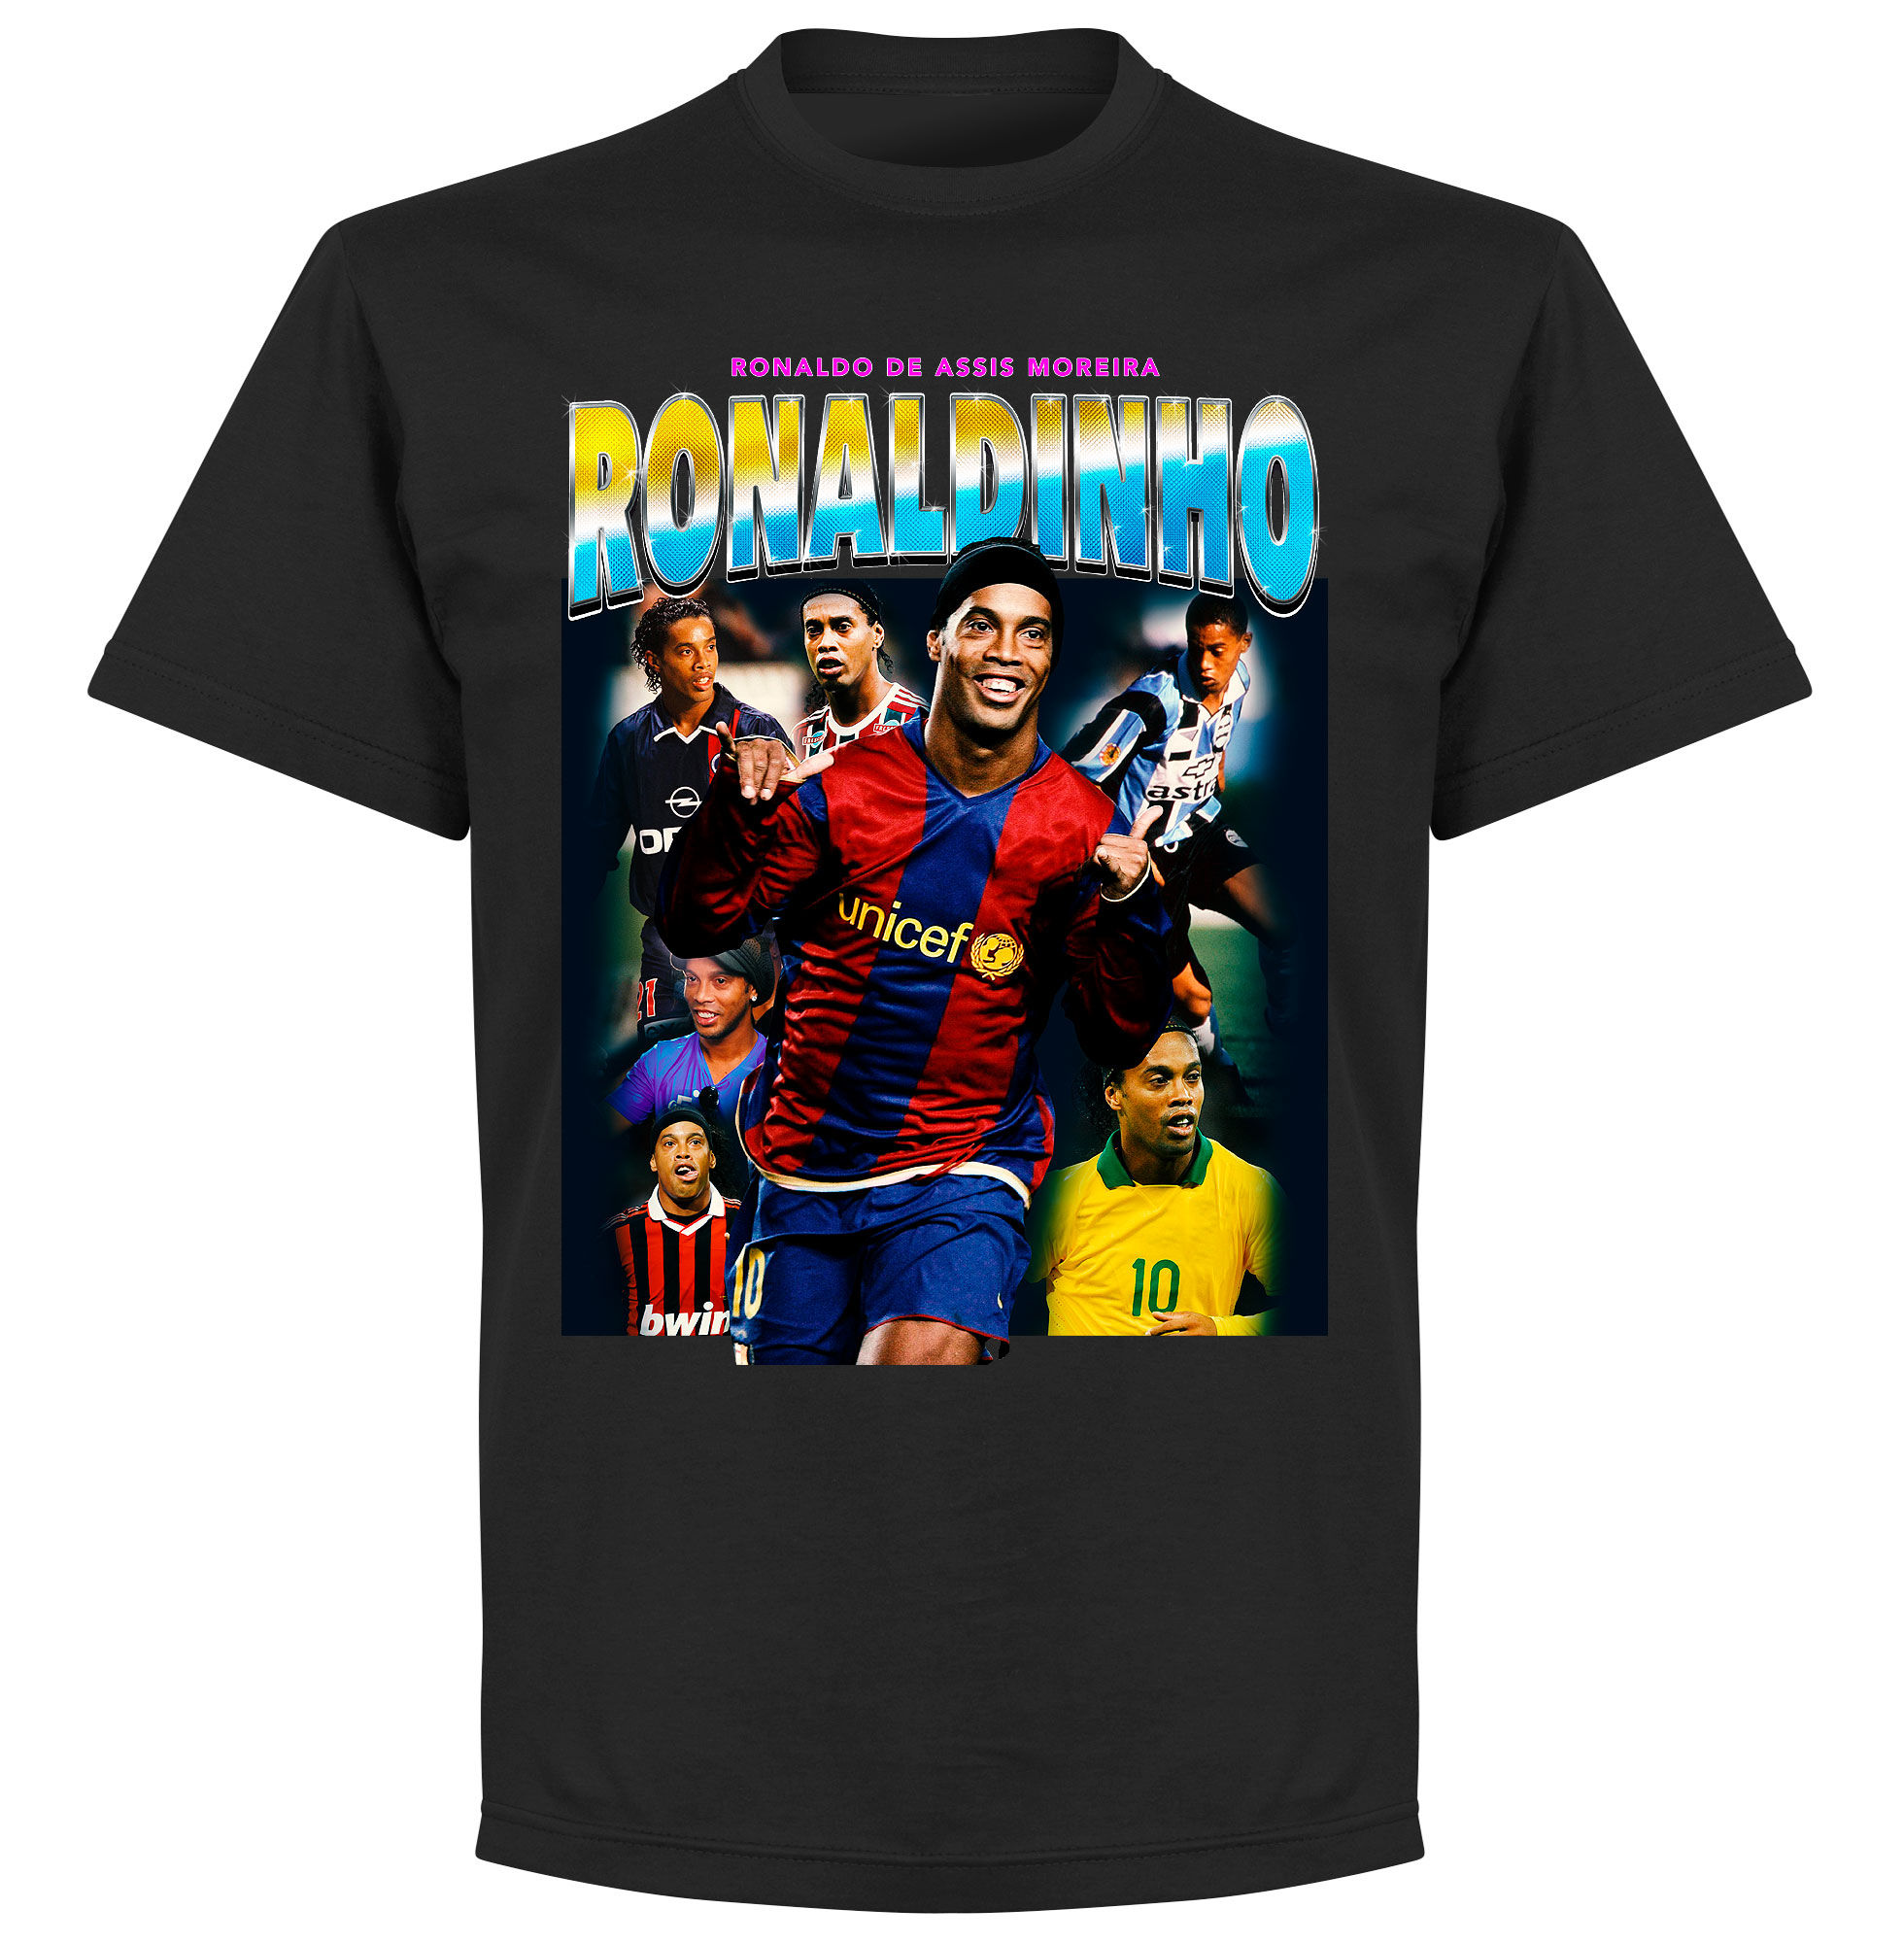 Barcelona - Tričko "Old Skool Hero" - Ronaldinho, černé